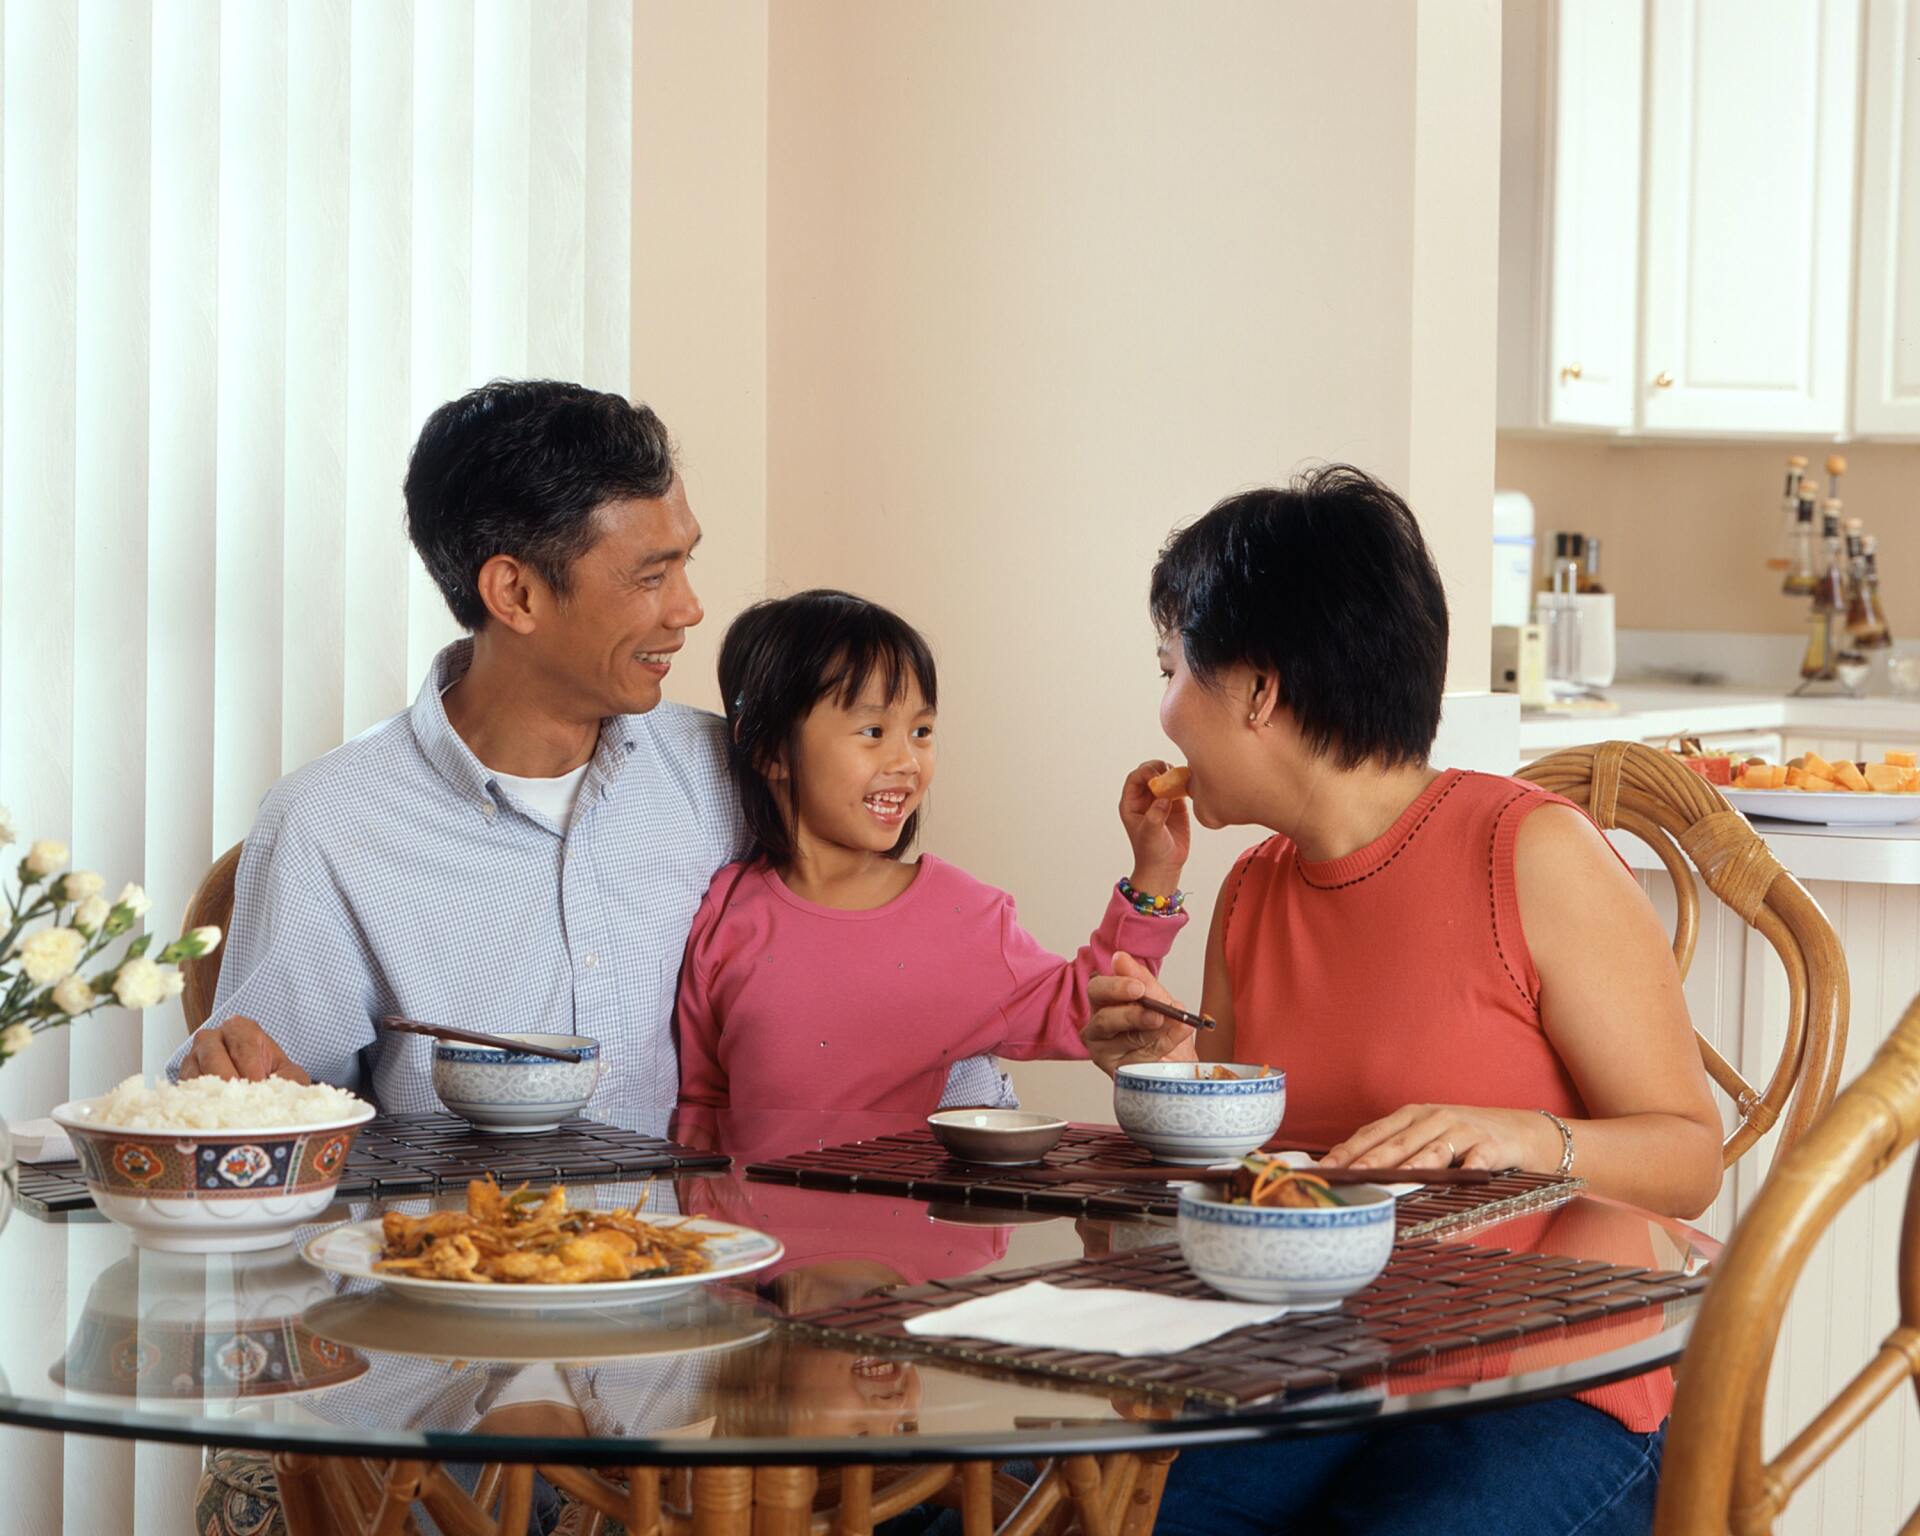 a smiling family eating dinner